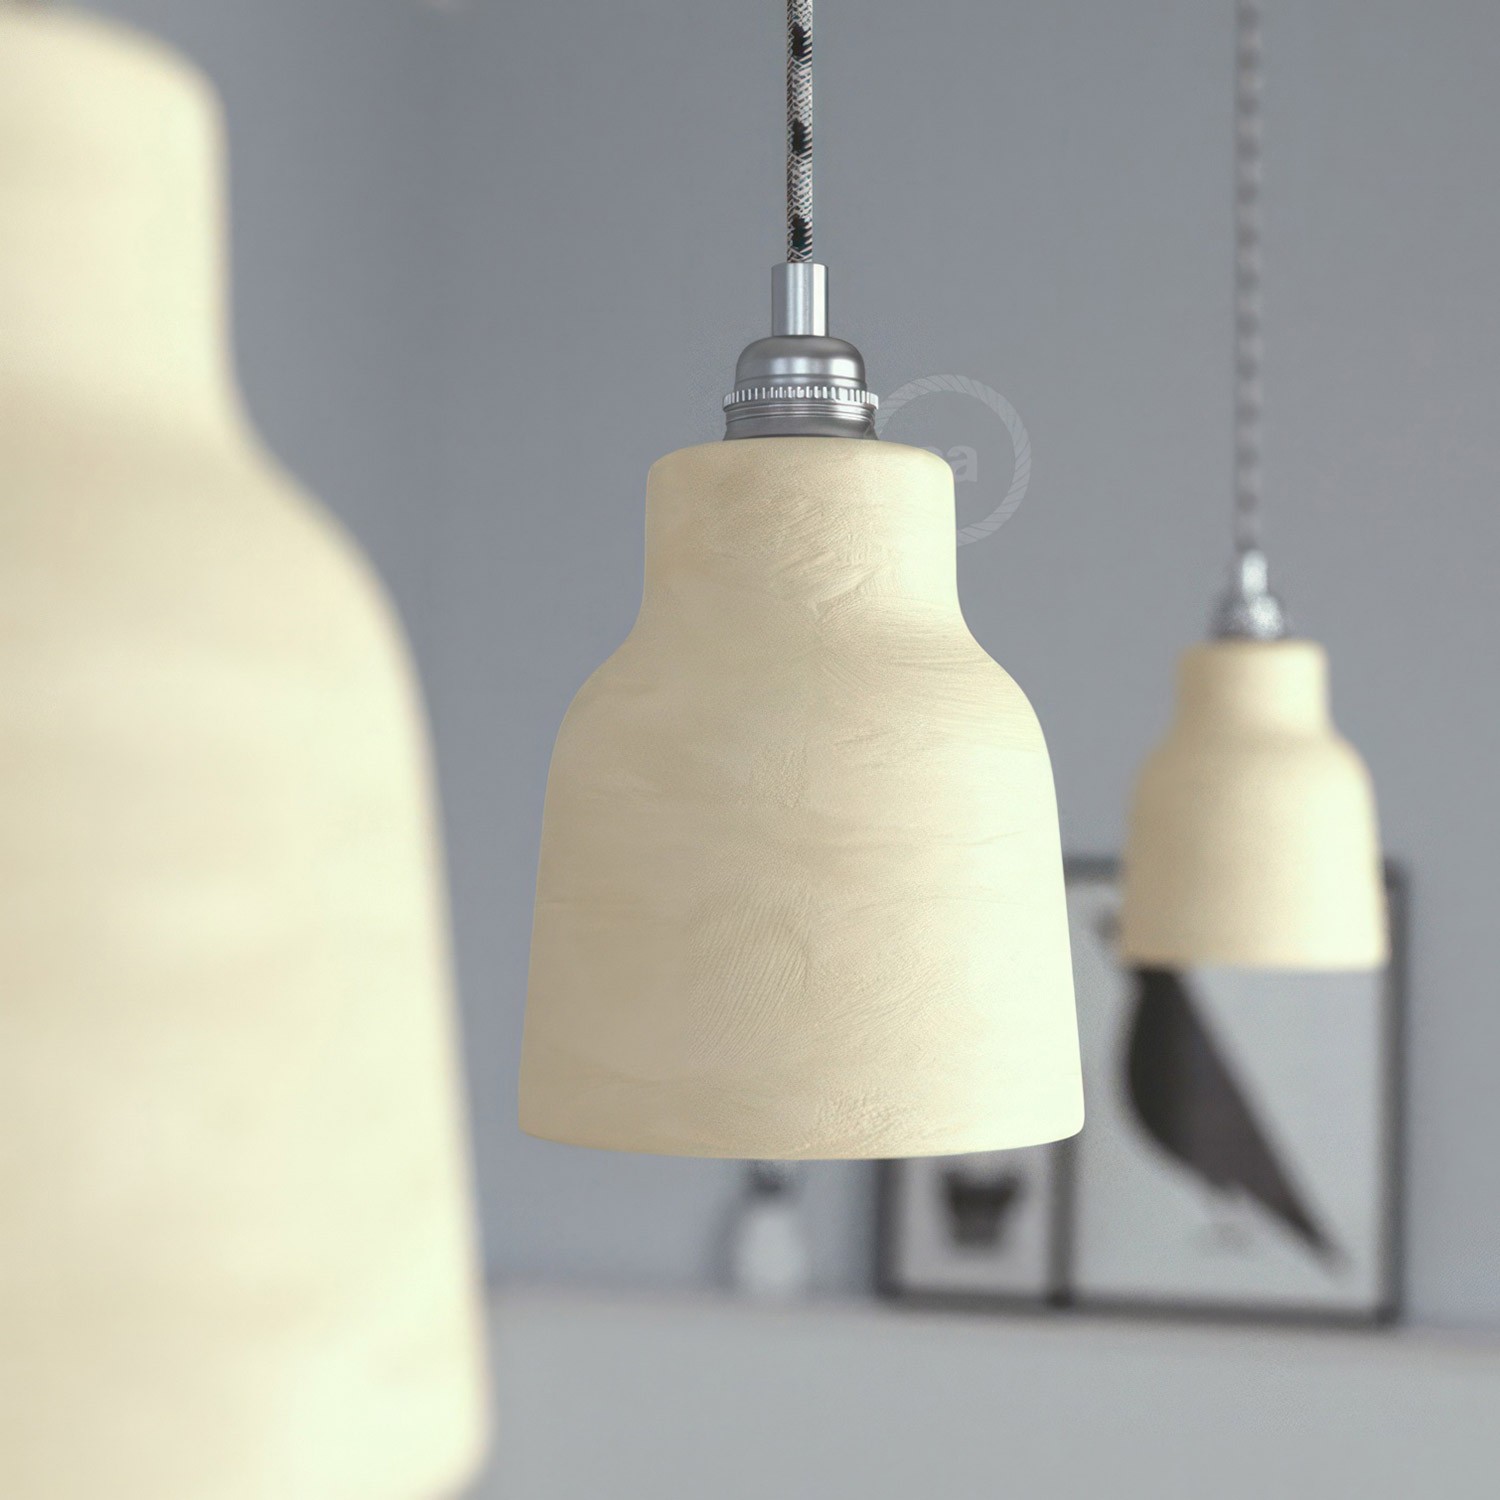 Pendelleuchte inklusive Textilkabel, vasenförmigem Lampenschirm aus Keramik und Metall-Zubehör - Made in Italy